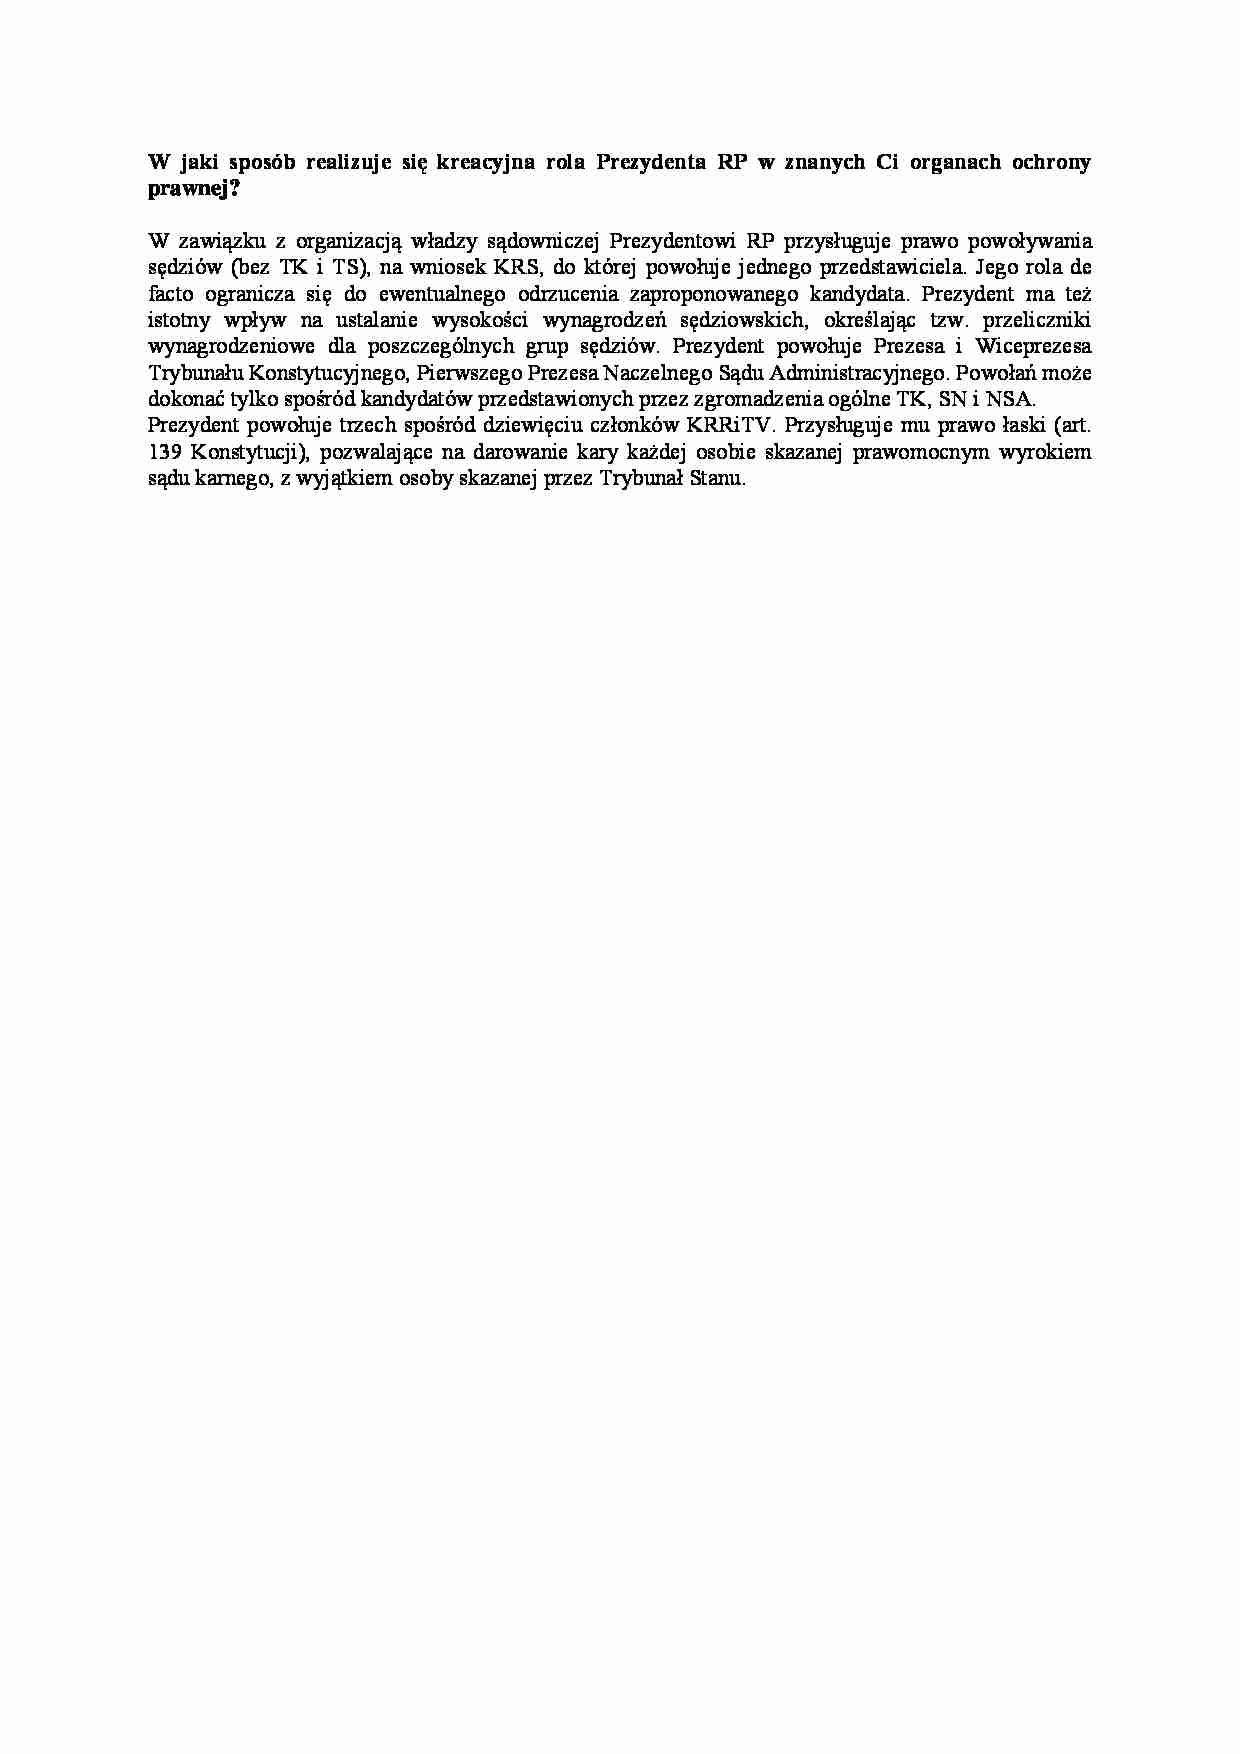 Kreacyjna rola Prezydenta RP w organach ochrony prawnej-opracowanie - strona 1